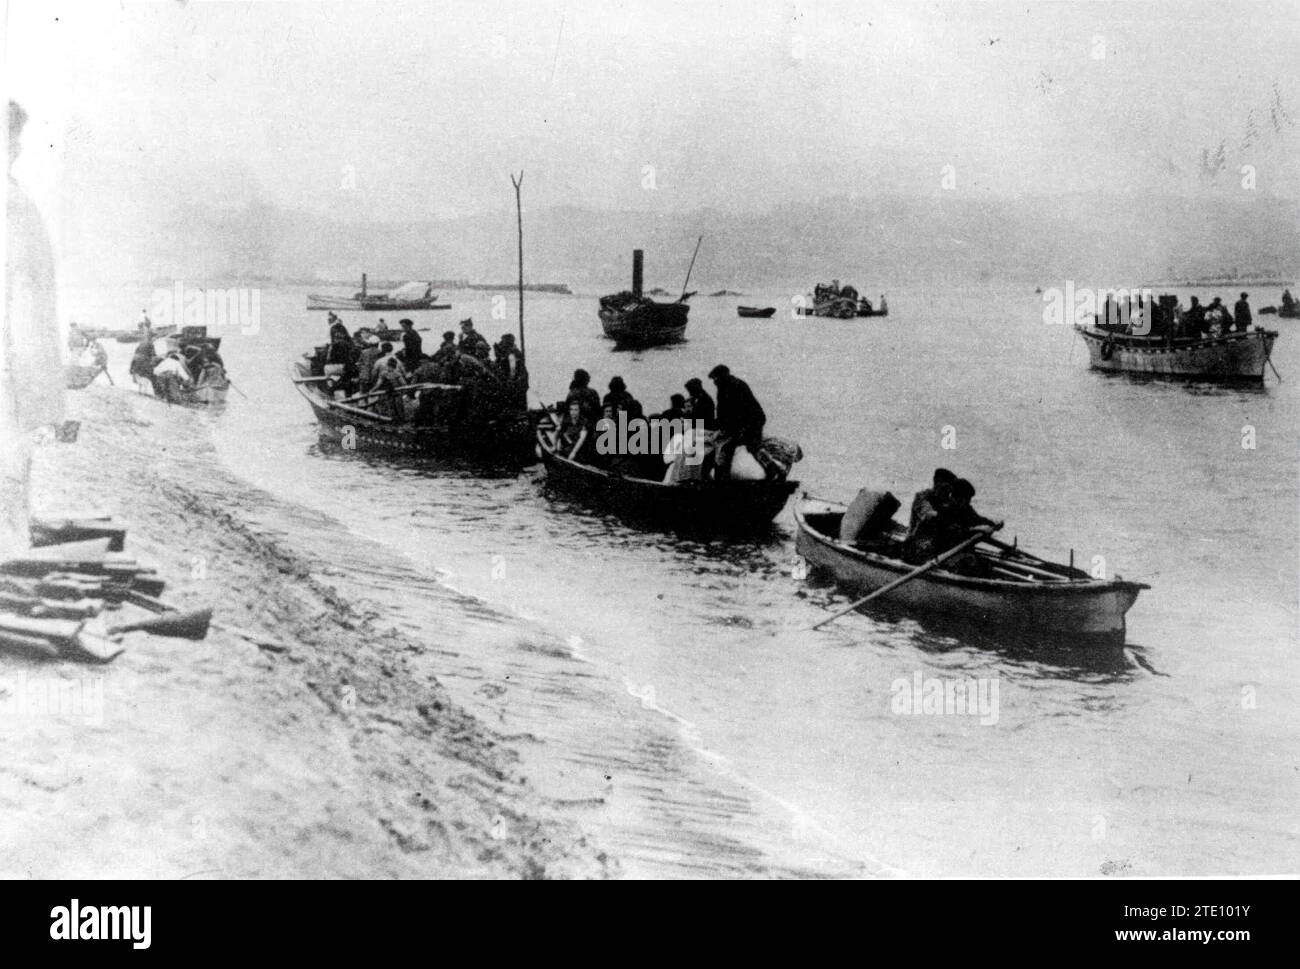 Hondarribia, Jahr 1939. Fischerboote voller republikanischer spanischer Flüchtlinge, die aus dem Land fliehen. Quelle: Album/Archivo ABC Stockfoto